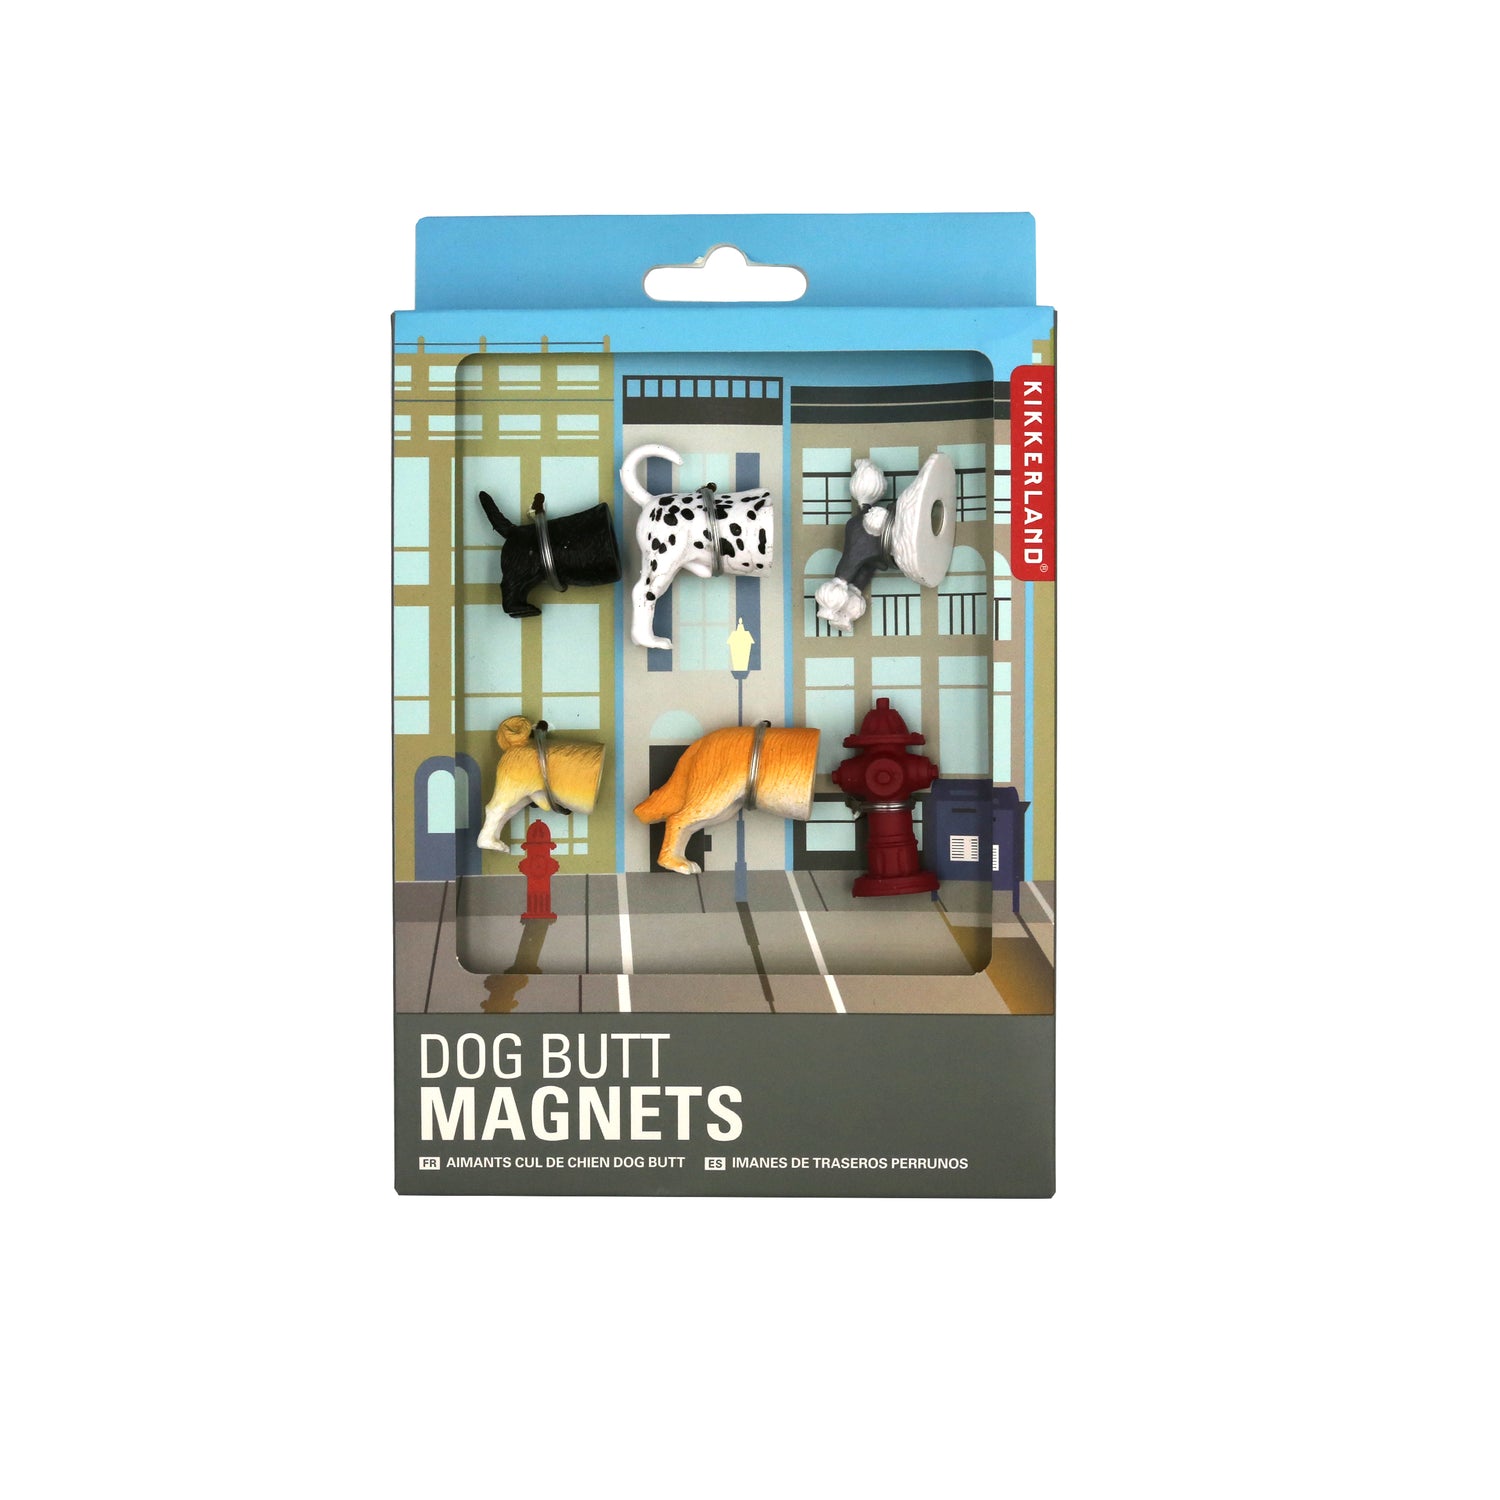 Hond Butt magneten 6 per set